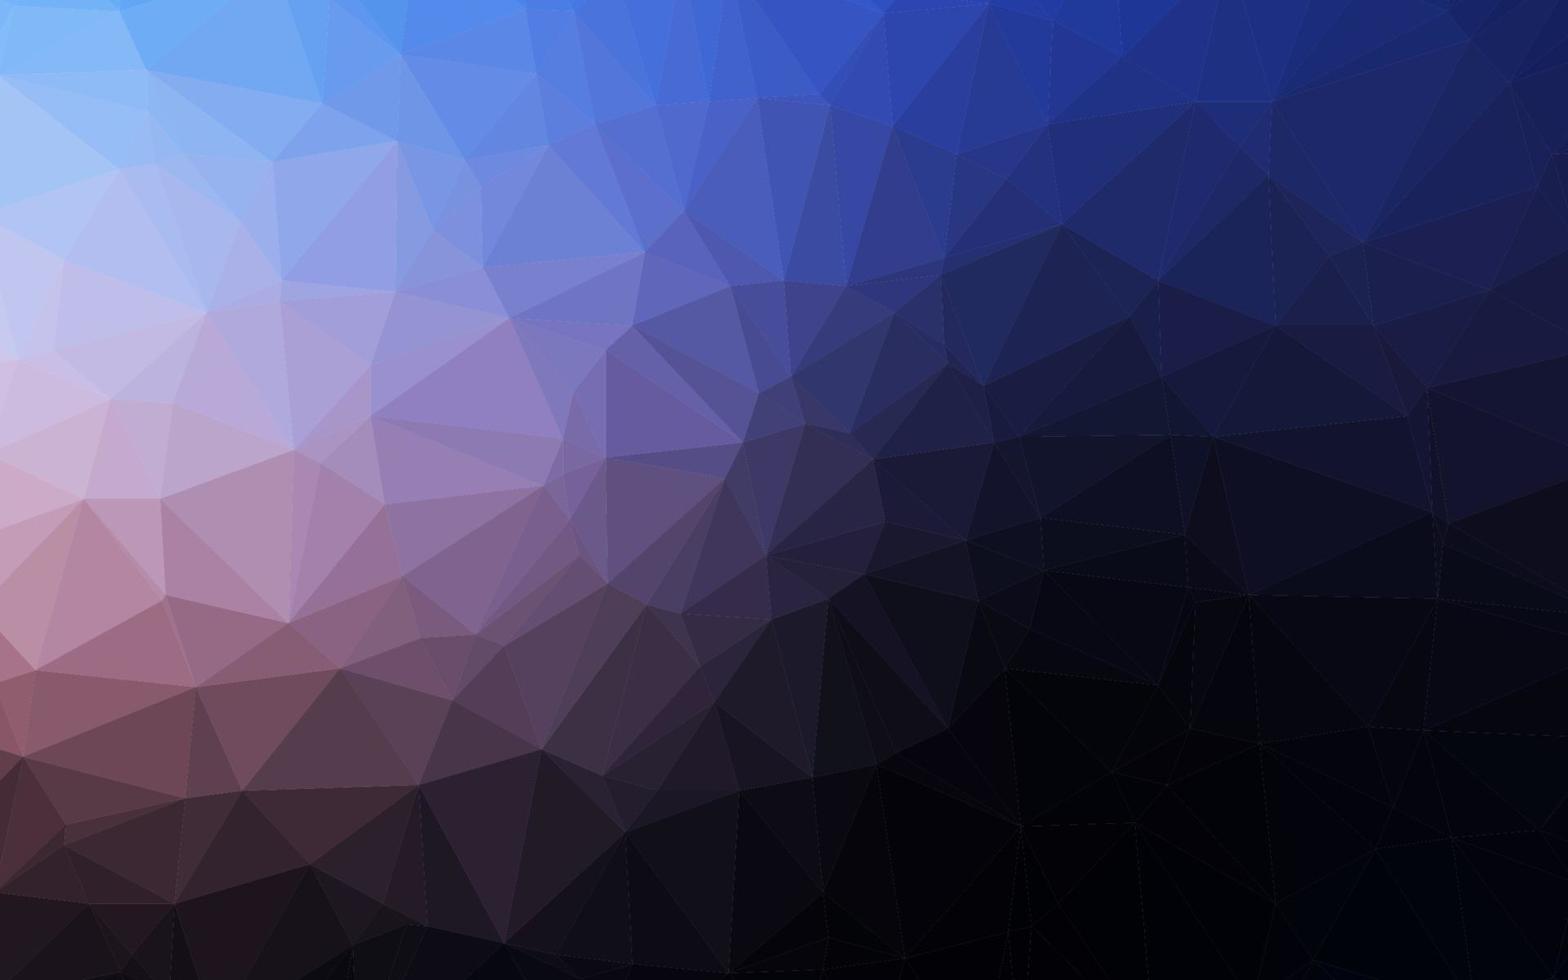 couverture polygonale abstraite de vecteur rose foncé, bleu.